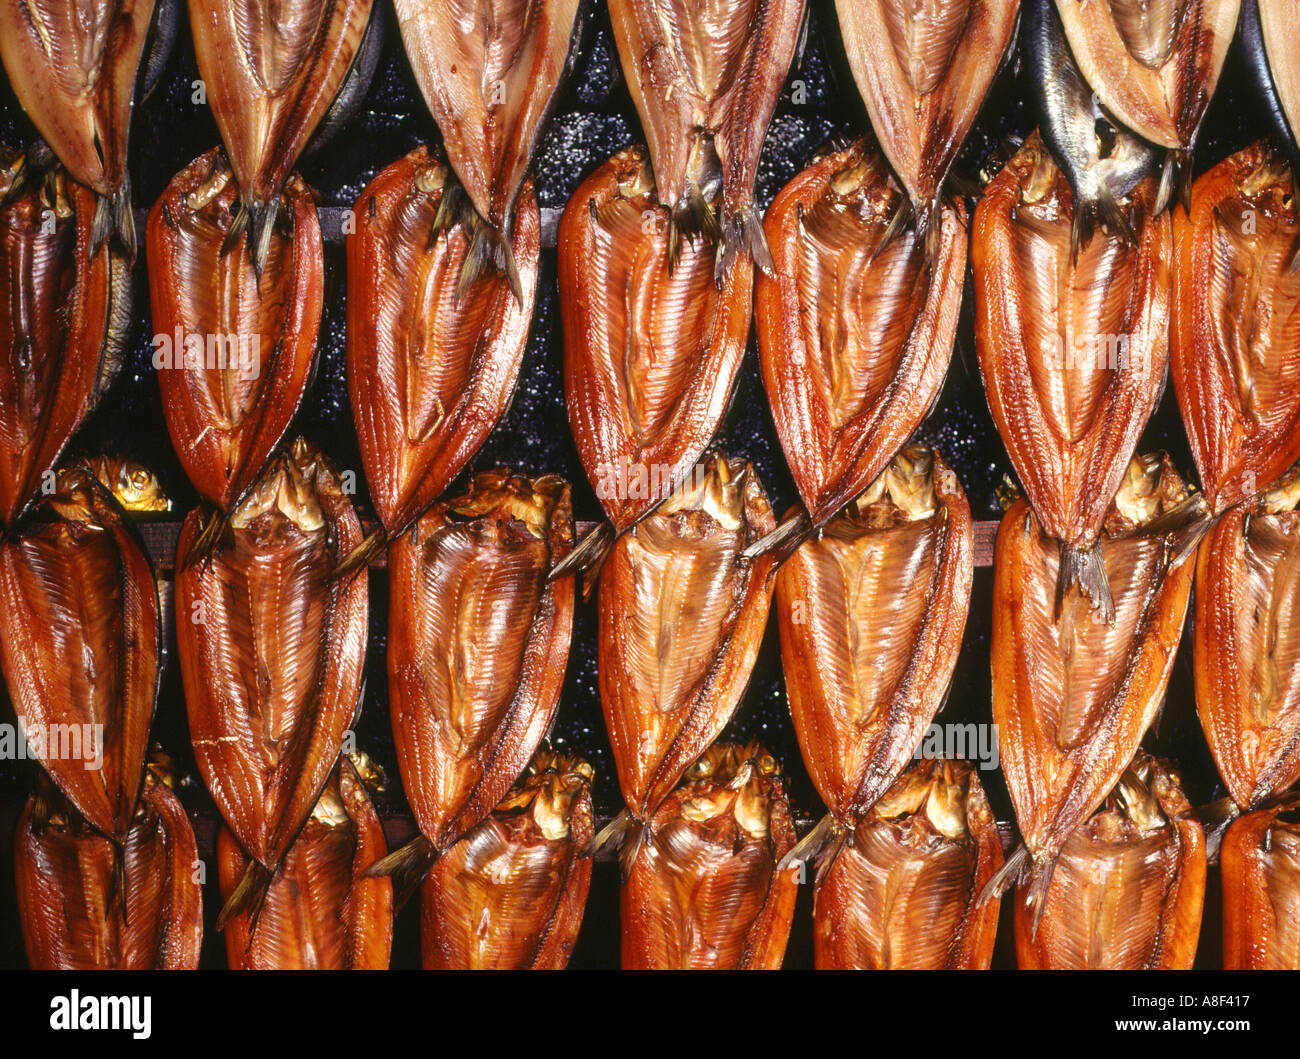 dh Scottish Smoking Ofen Display FISCH GERÄUCHERT UK SCHOTTLAND Reihen Von geräucherten Kippern konservierte Lebensmittel getrocknet hängen aus der Nähe geheilt Fische Stockfoto